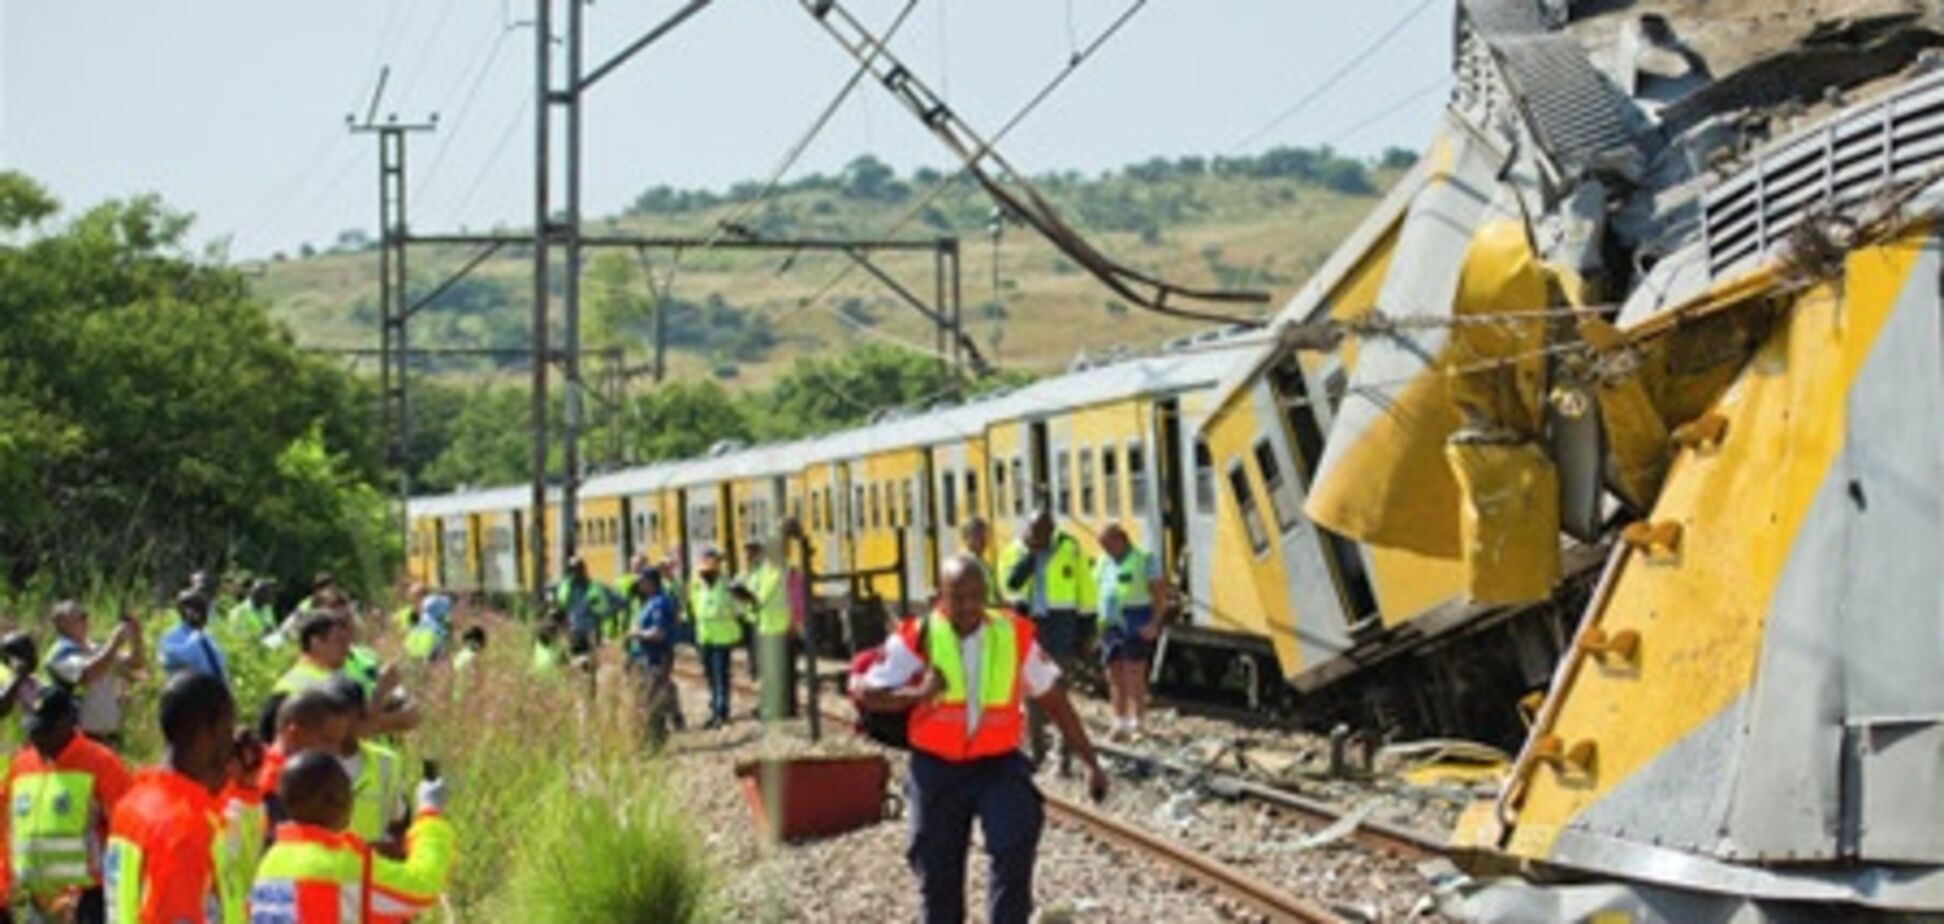 Количество пострадавших при столкновении поездов в ЮАР достигло 350 человек